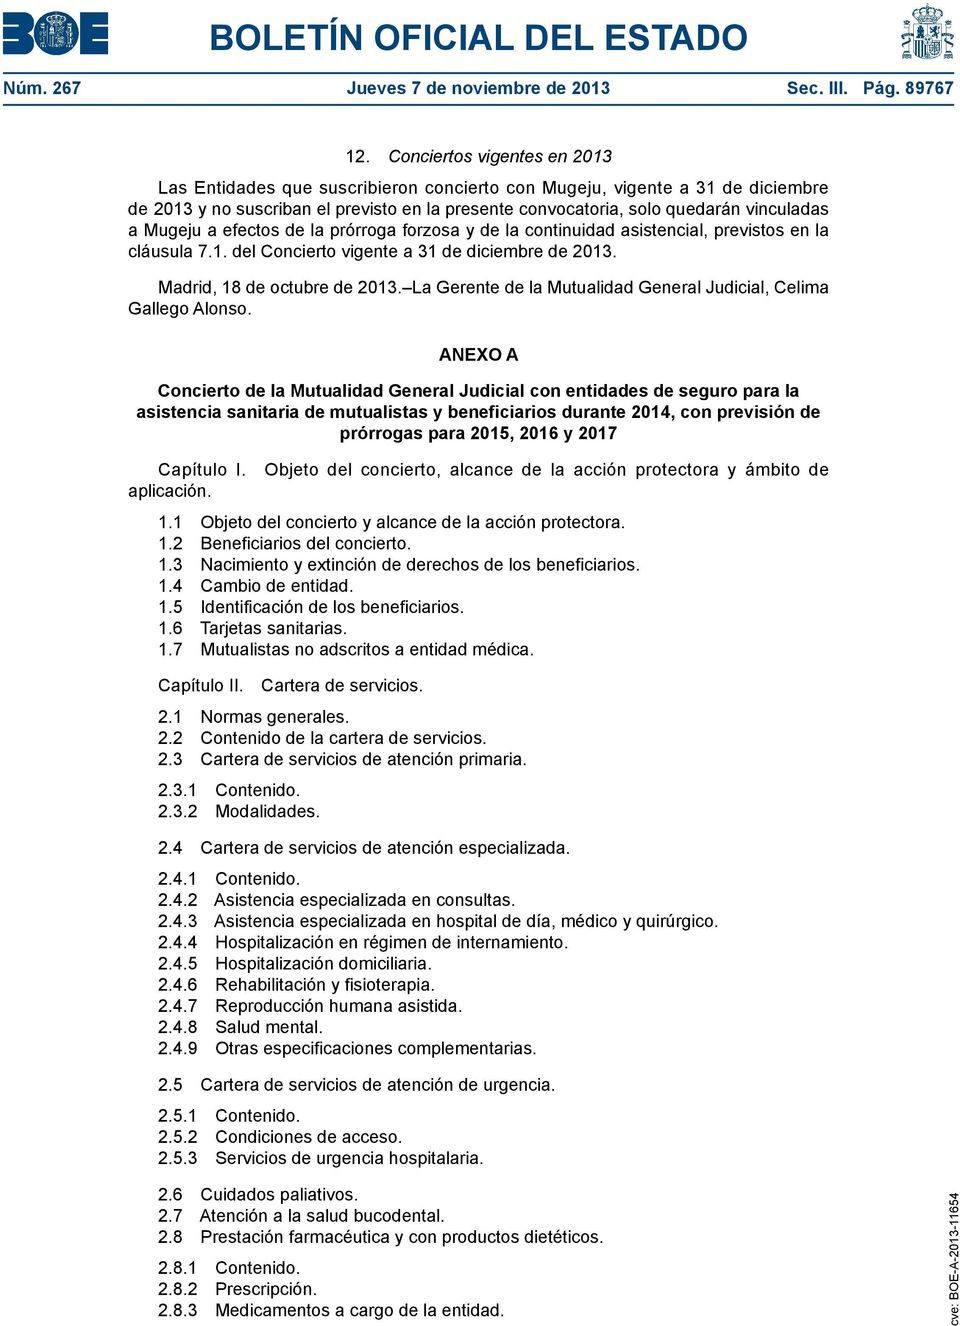 Mugeju a efectos de la prórroga forzosa y de la continuidad asistencial, previstos en la cláusula 7.1. del Concierto vigente a 31 de diciembre de 2013. Madrid, 18 de octubre de 2013.